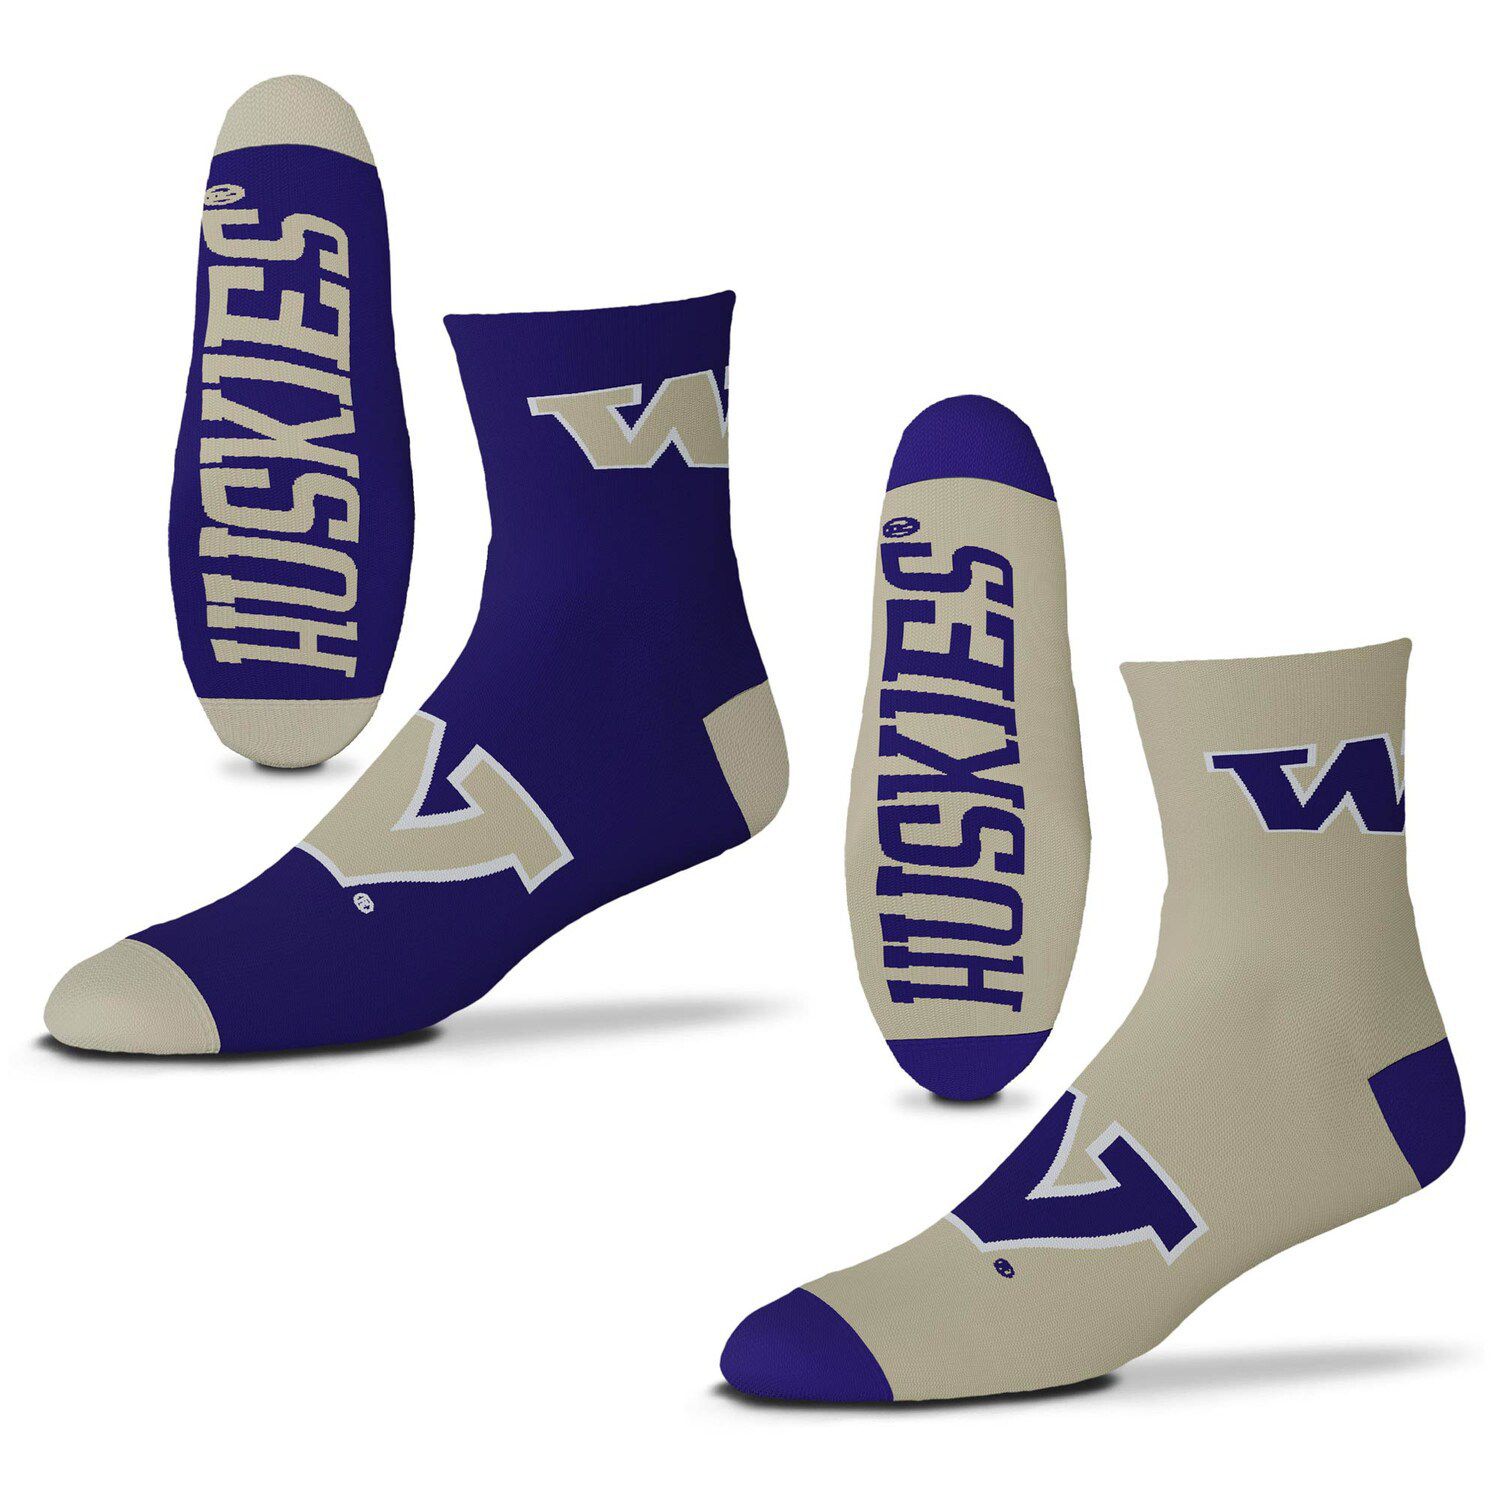 Image for Unbranded Men's For Bare Feet Washington Huskies 2-Pack Team Quarter-Length Socks at Kohl's.